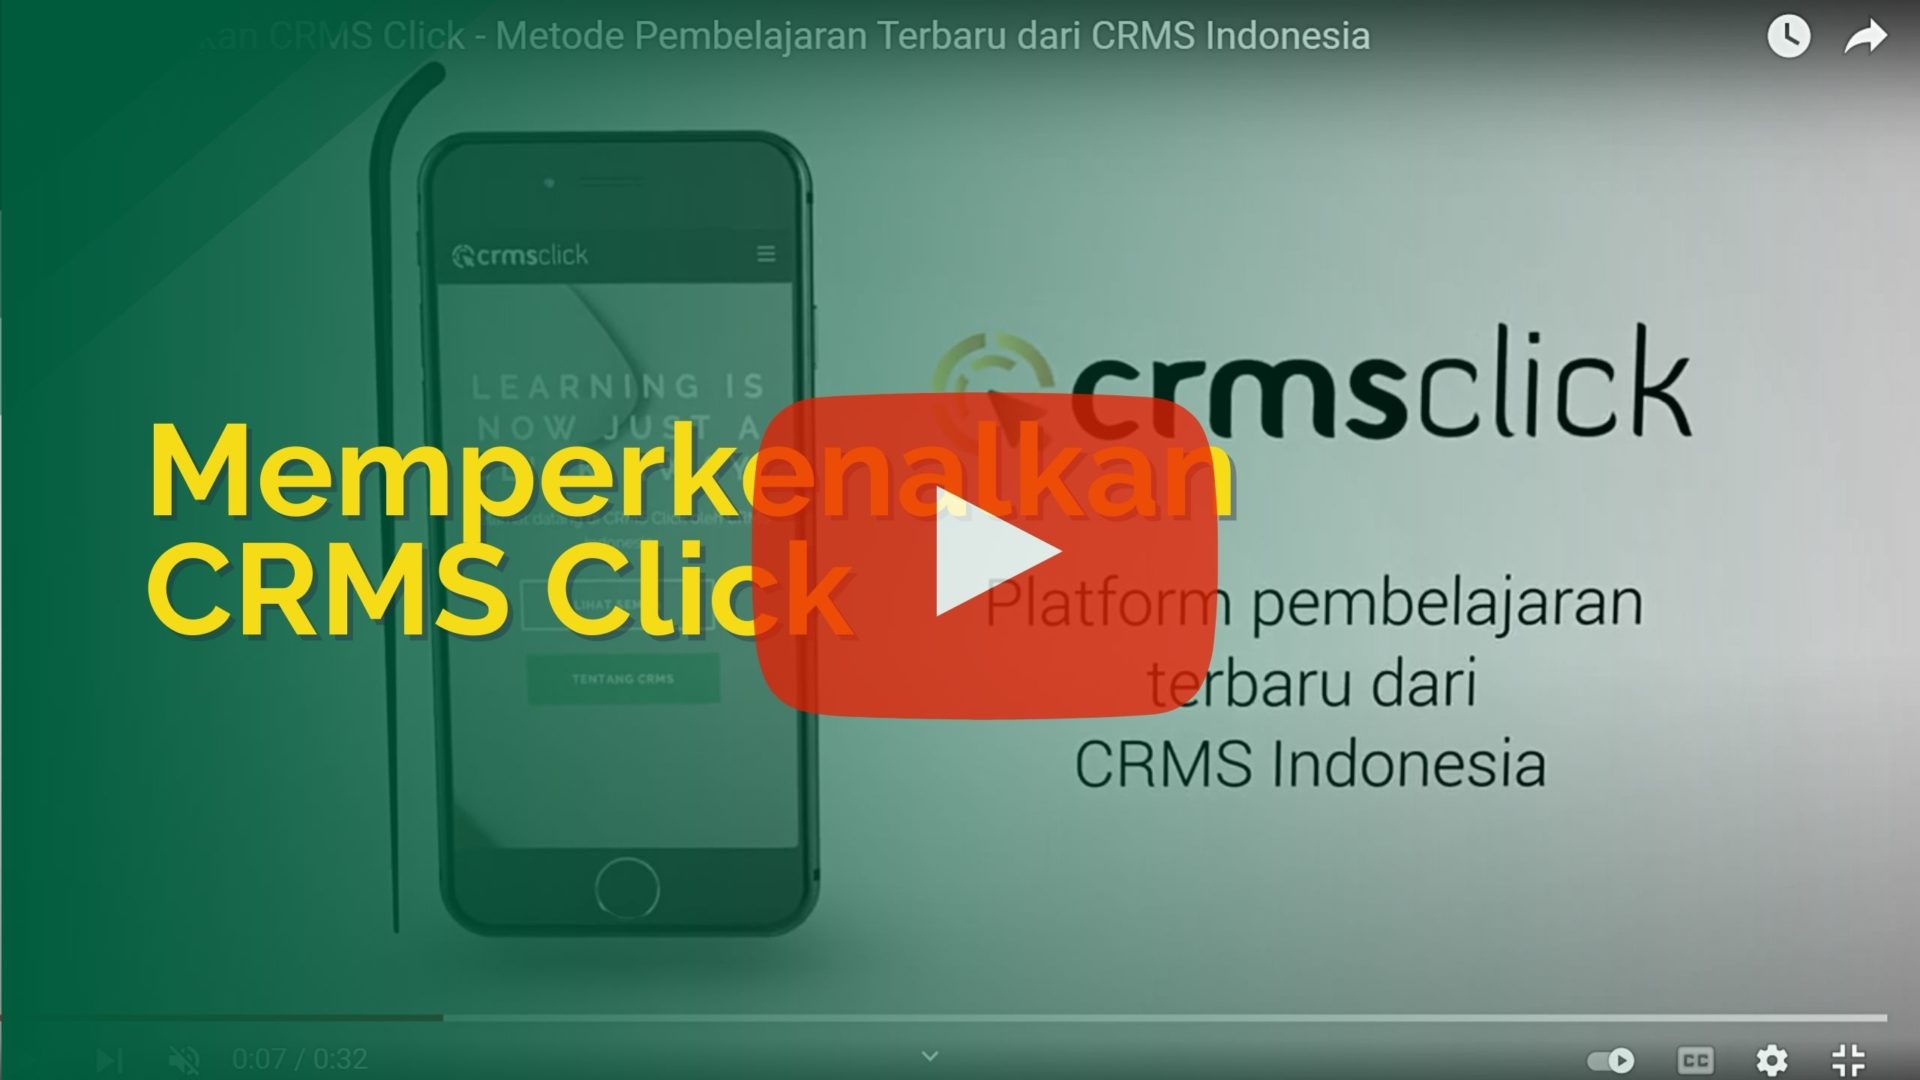 Memperkenalkan CRMS Click